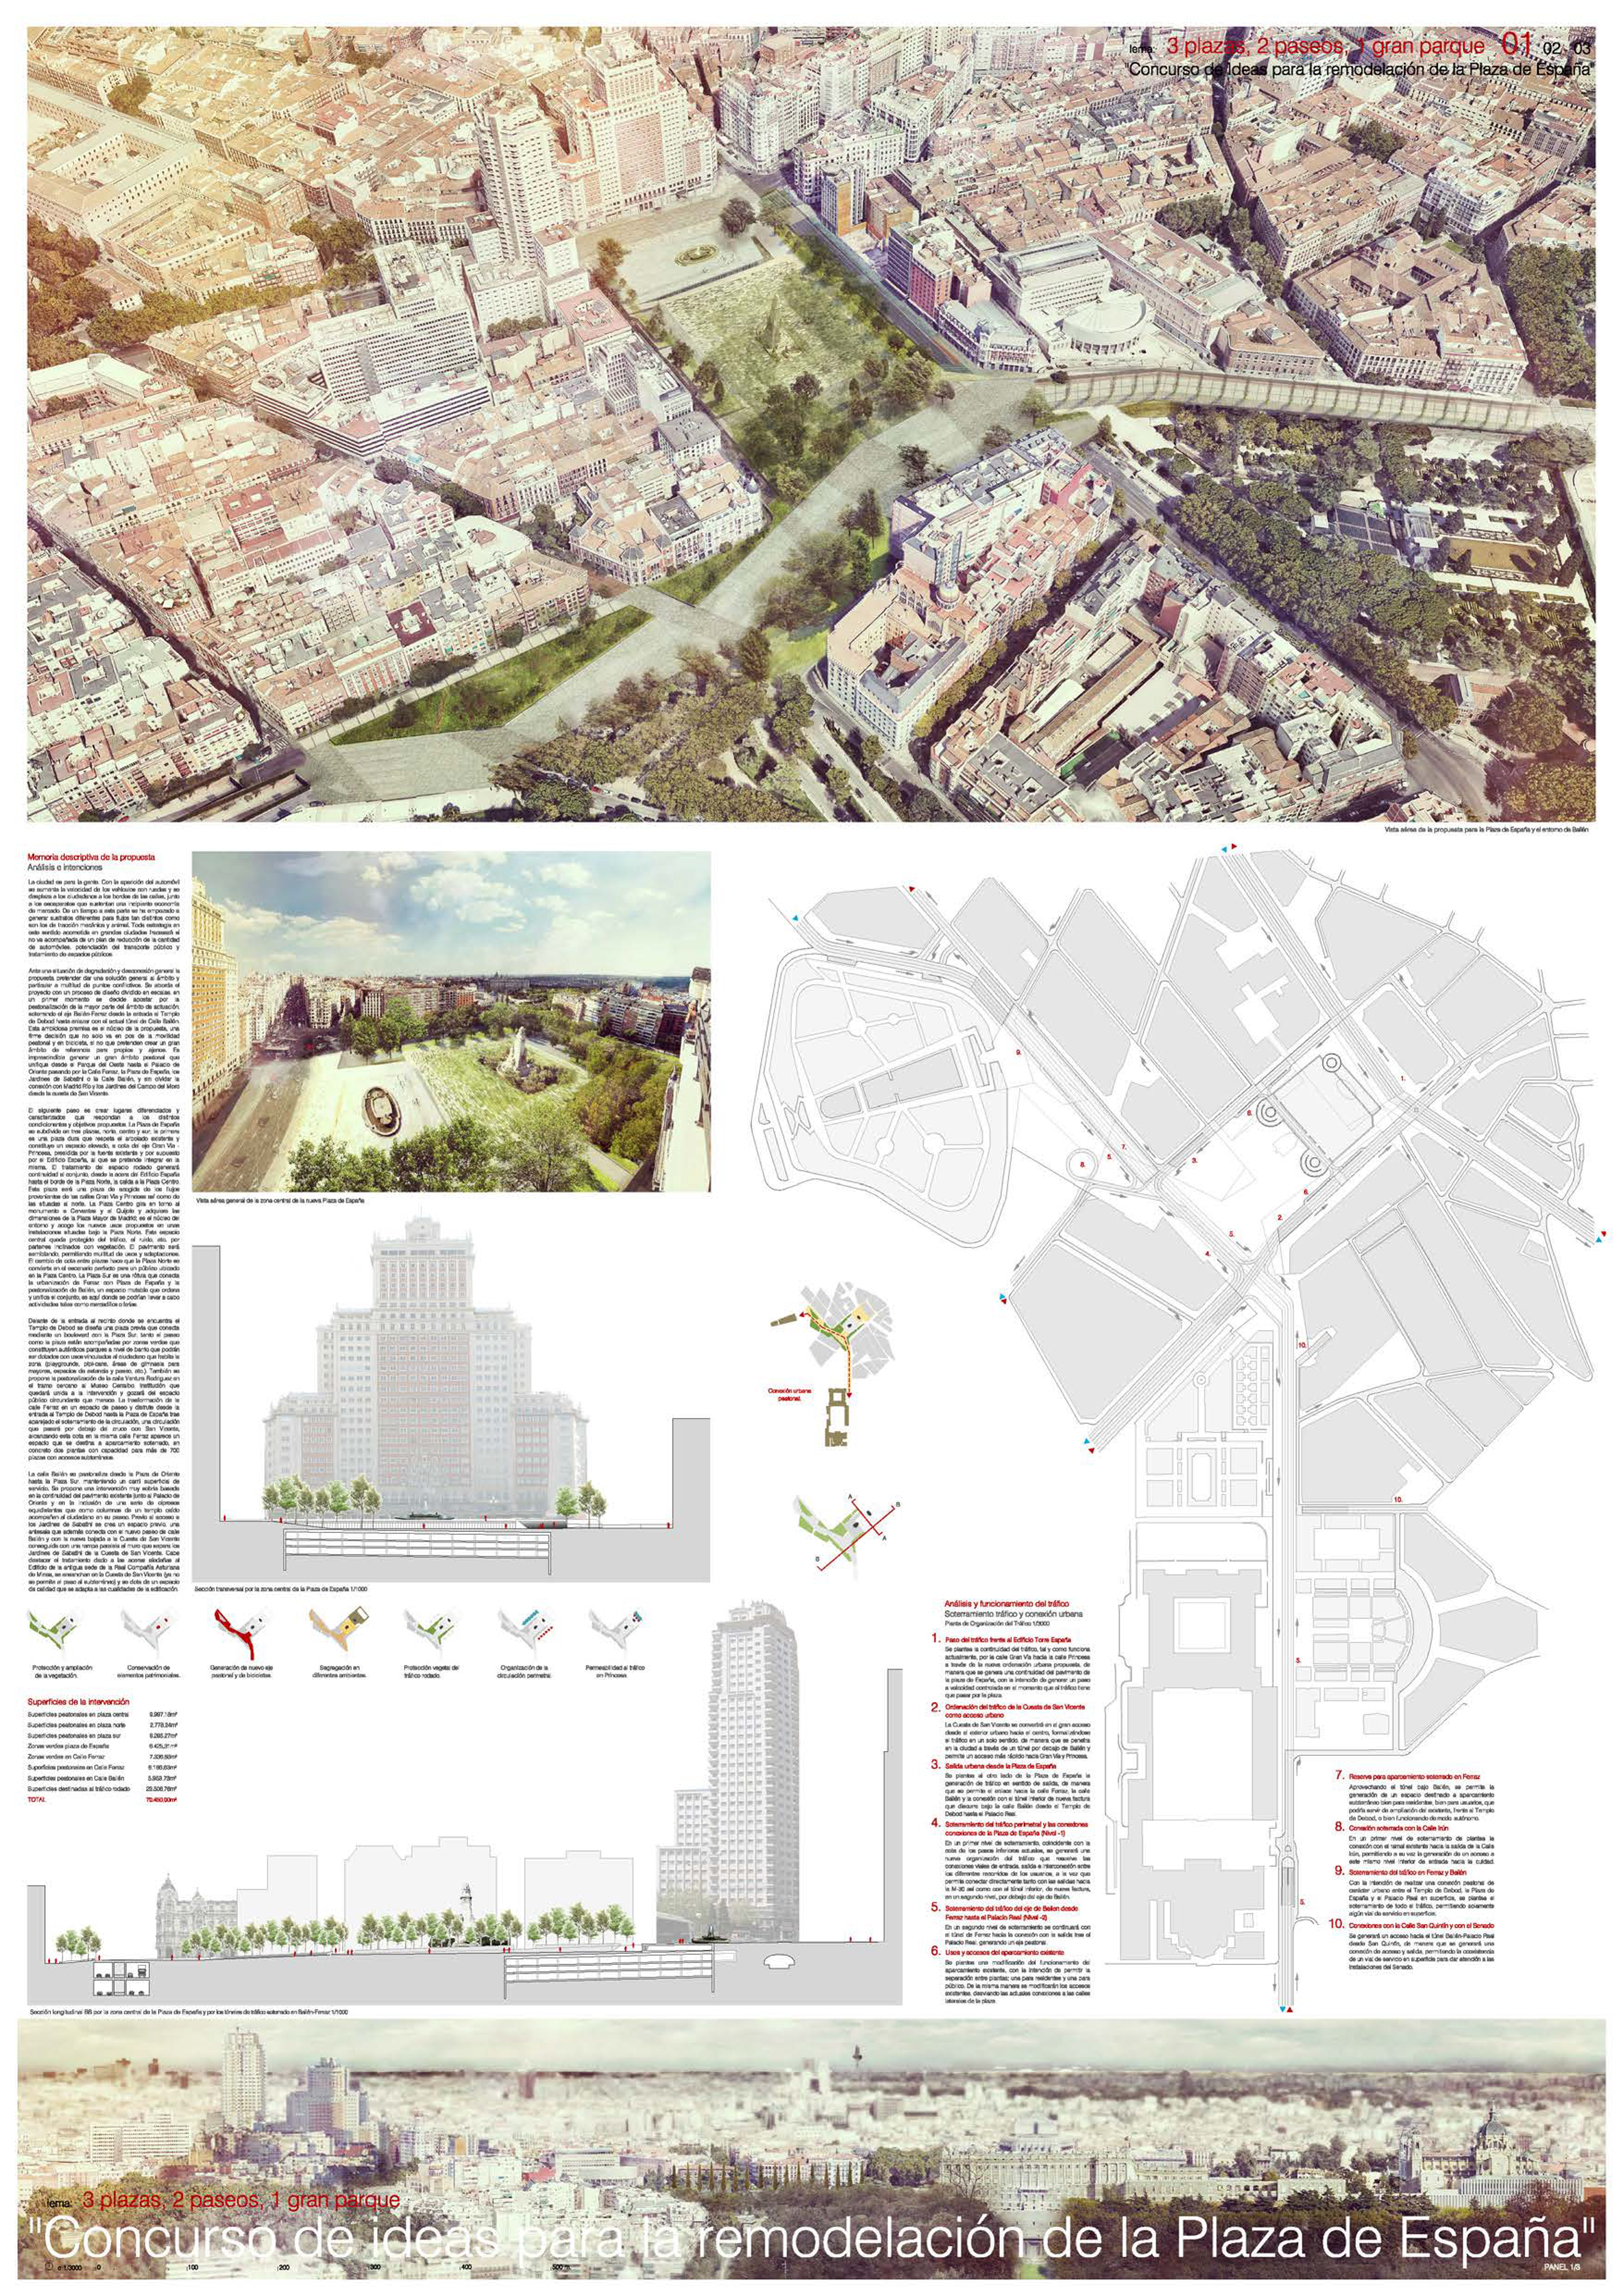 Proyecto 54 para la Remodelación de Plaza España: 3 plazas, 2 paseos, 1 gran parque